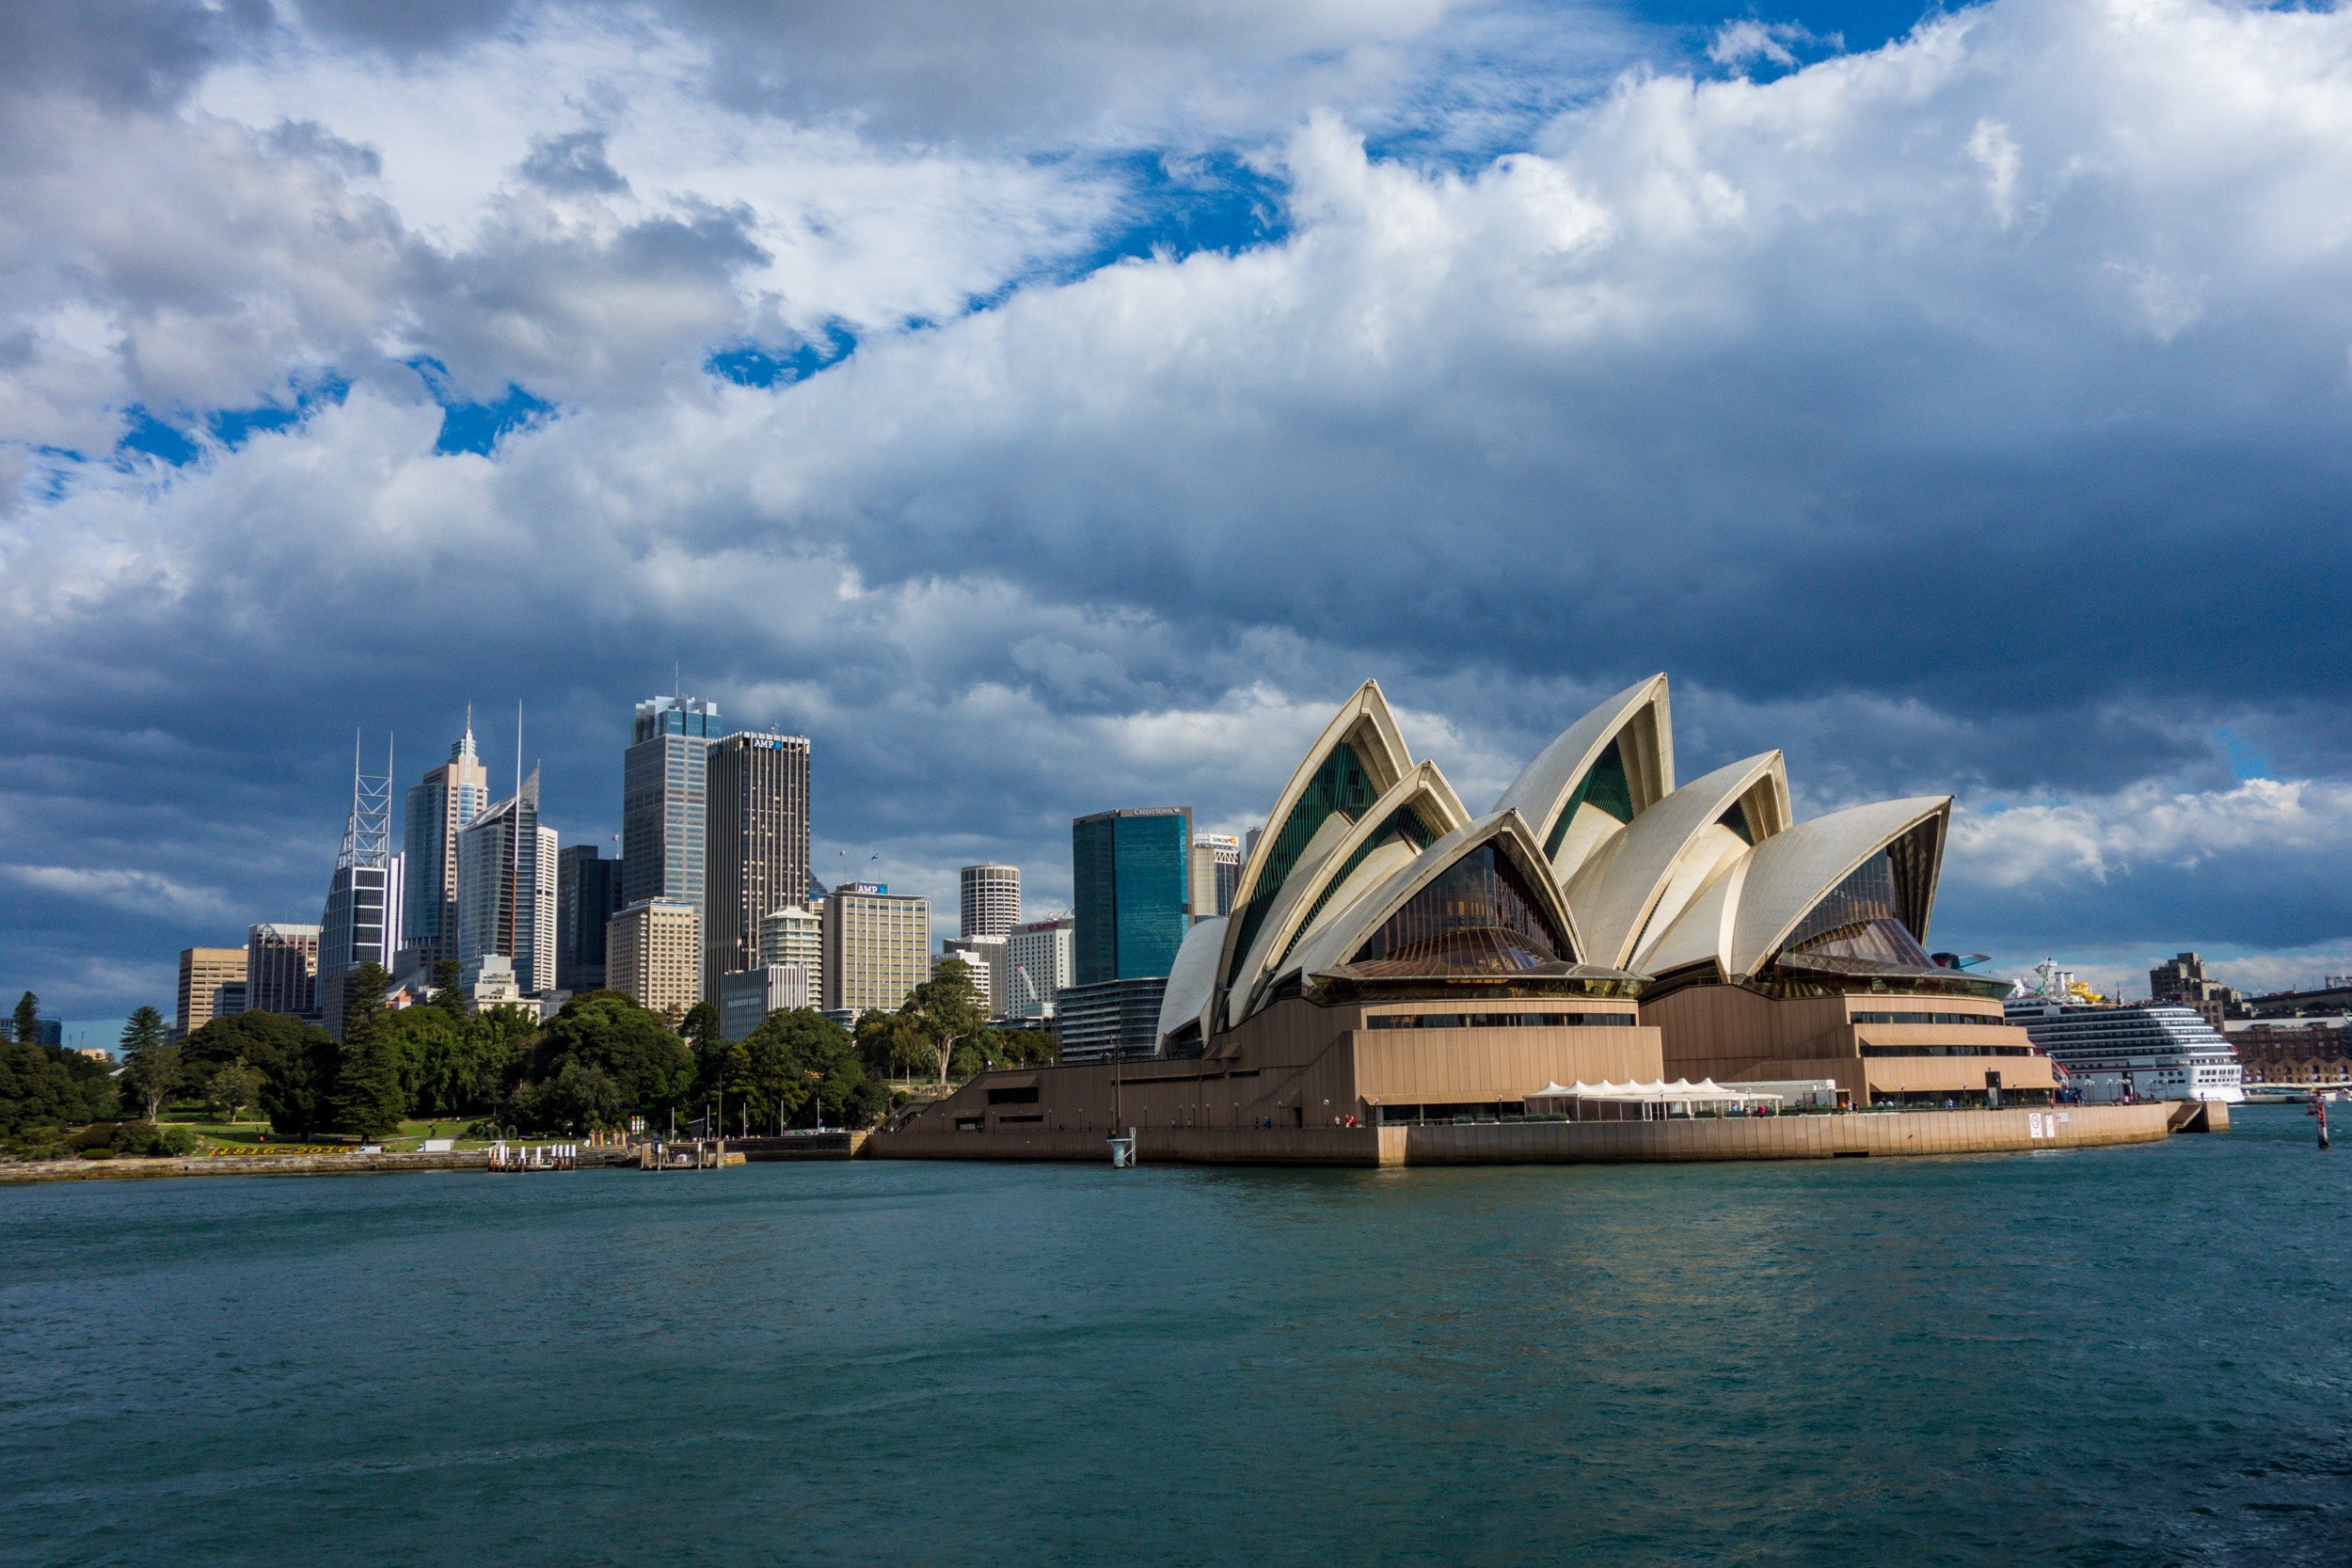 Image of the Sydney Opera House.